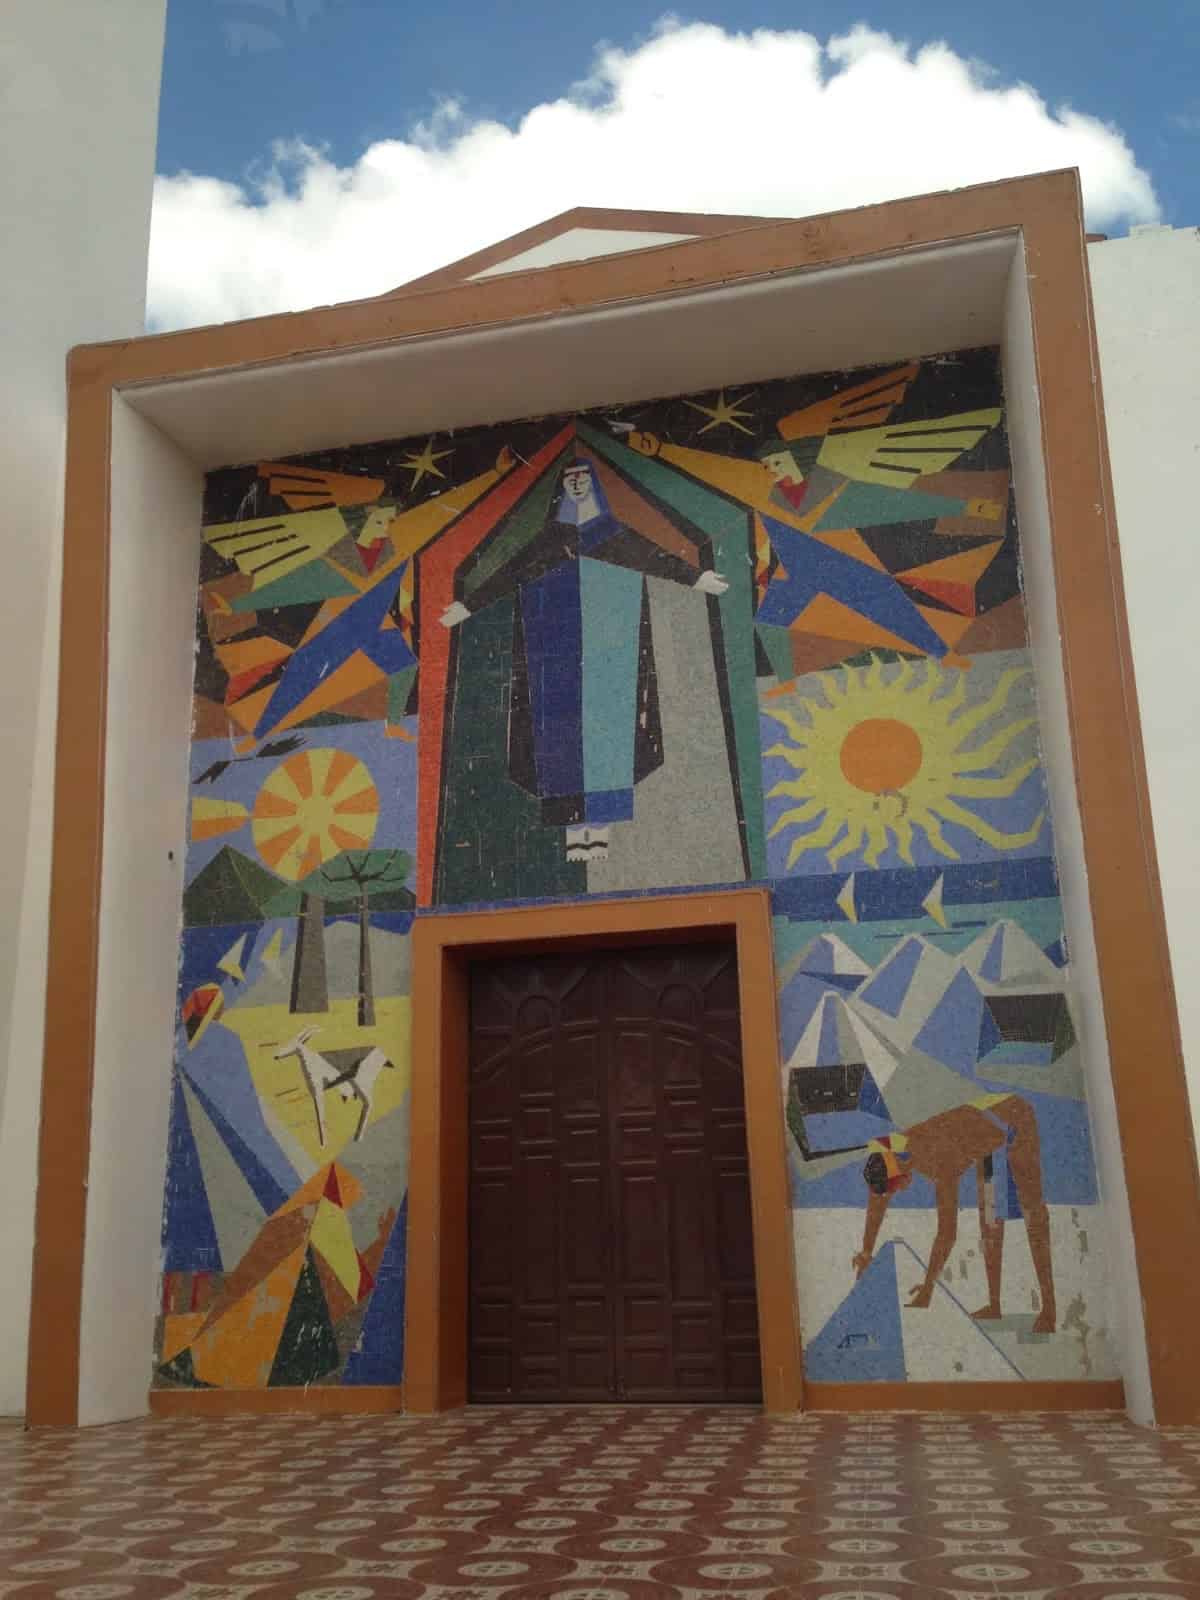 Iglesia Santa Rita de Casia in Manaure, La Guajira, Colombia